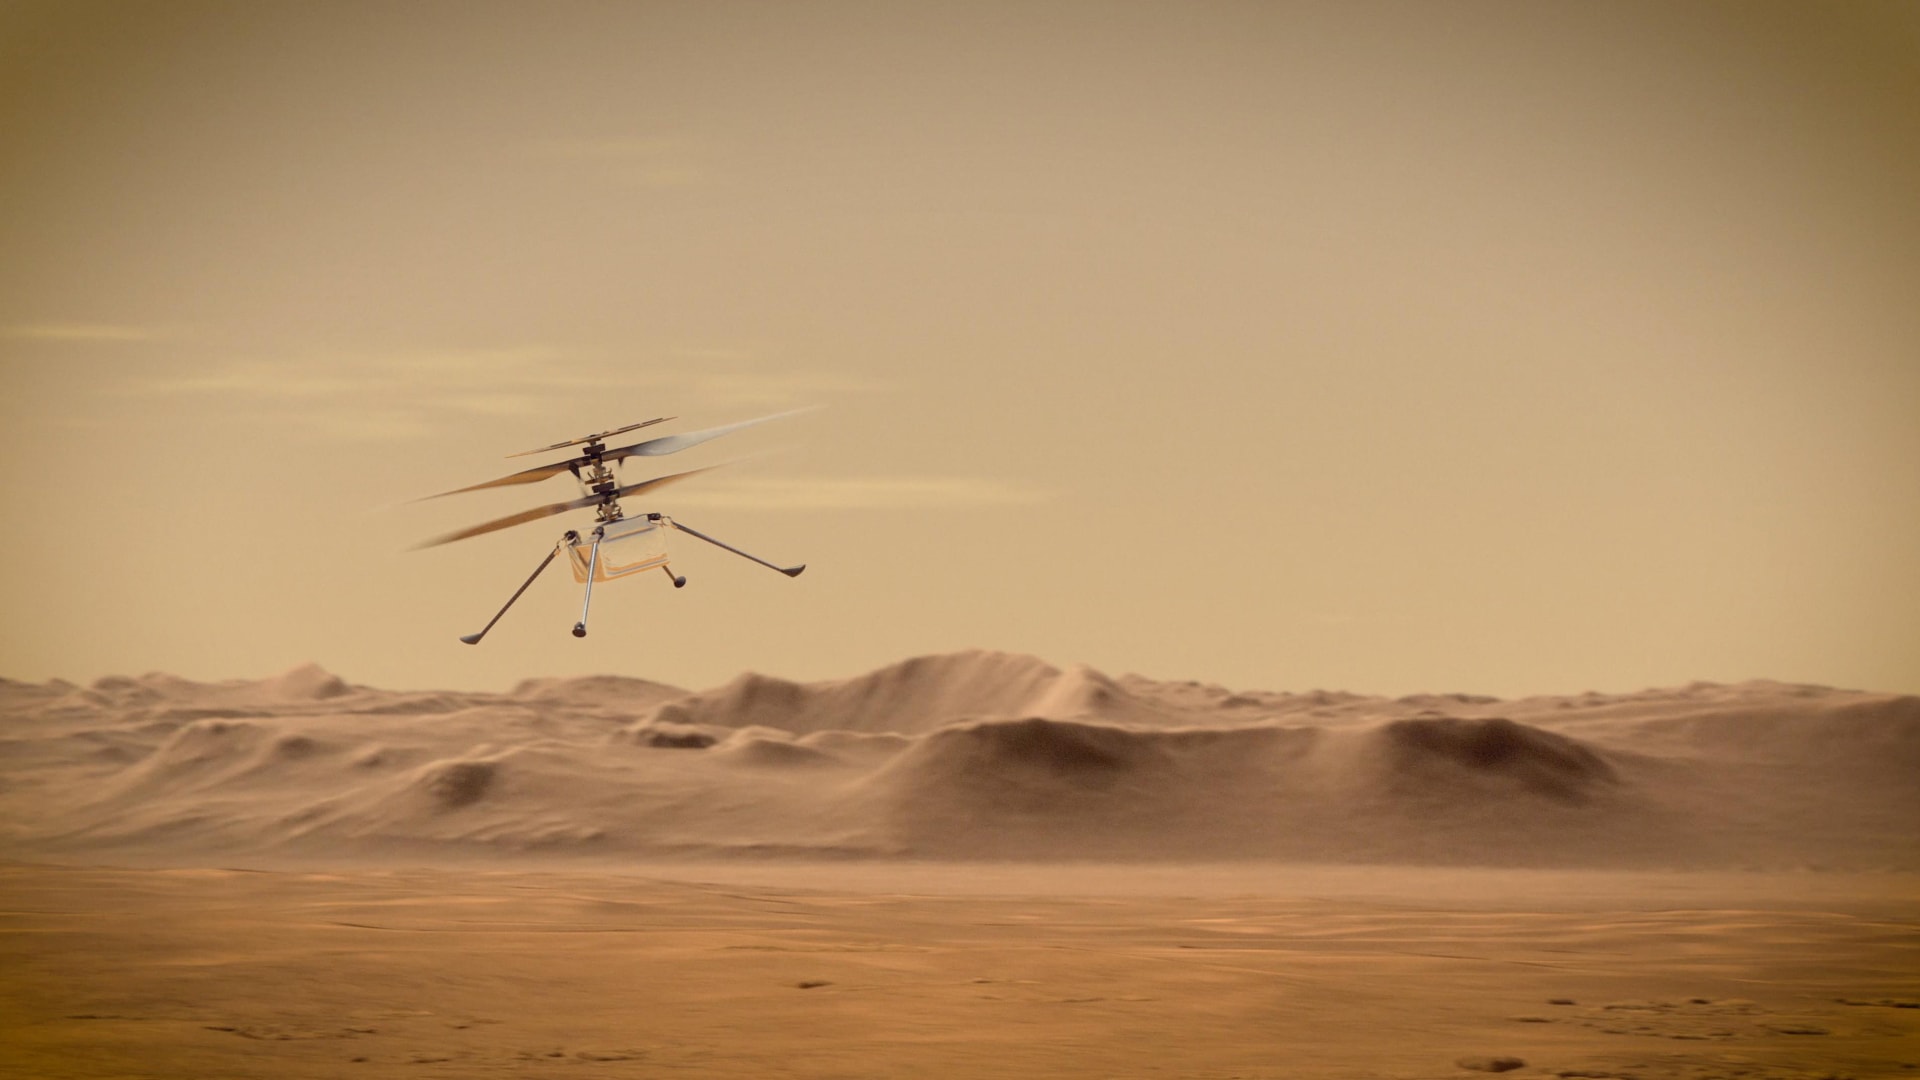 Helikoptéra Ingenuity úspěšně přečkala první samostatnou noc na Marsu po oddělení od roveru Perseverance.